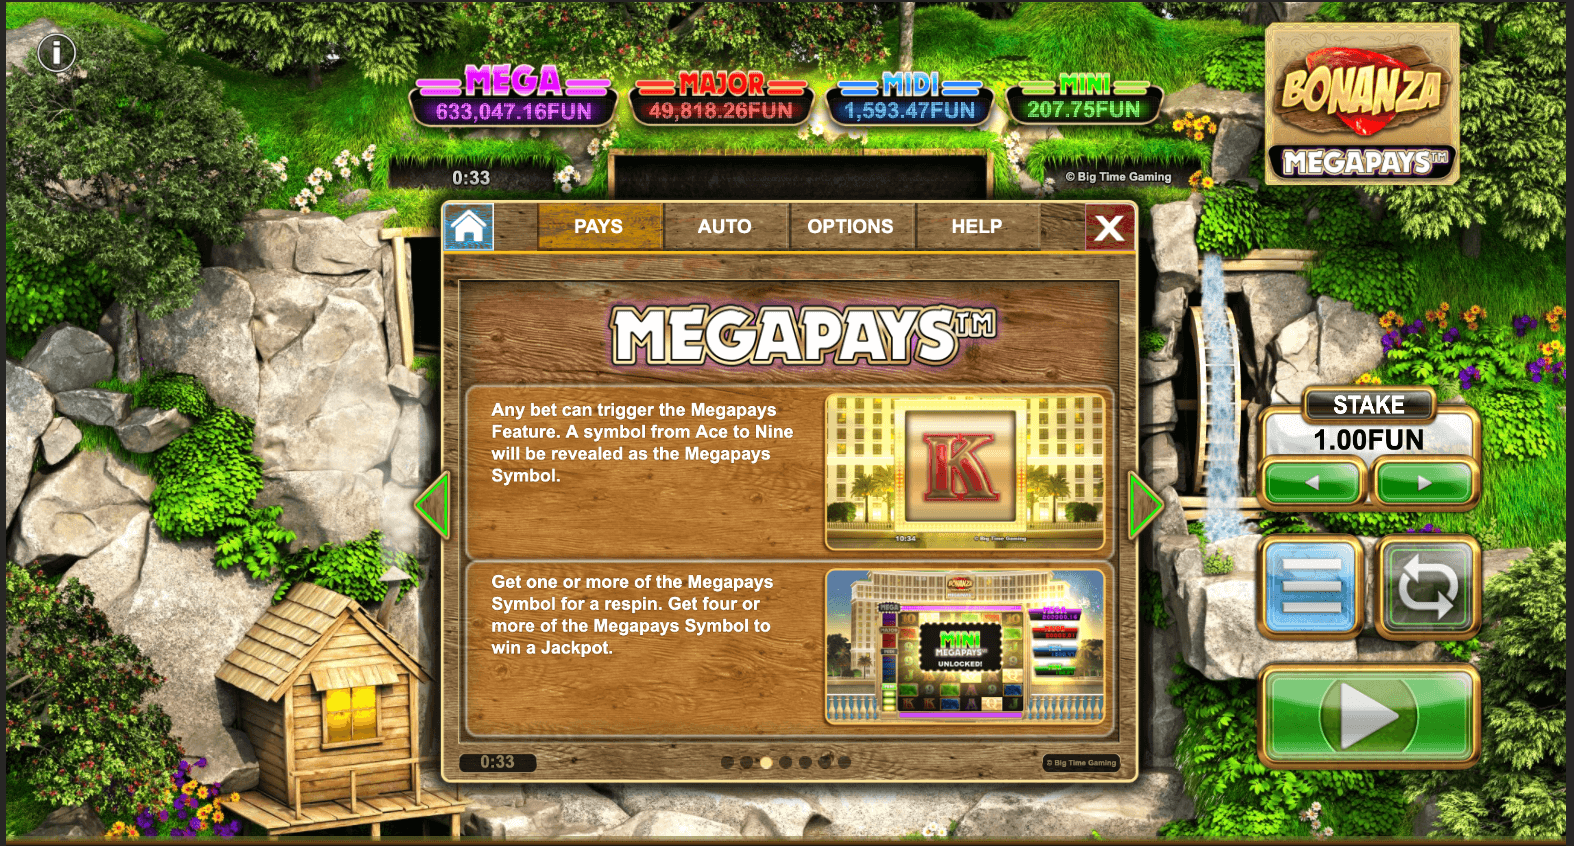 Bonanza Megapays  Game process